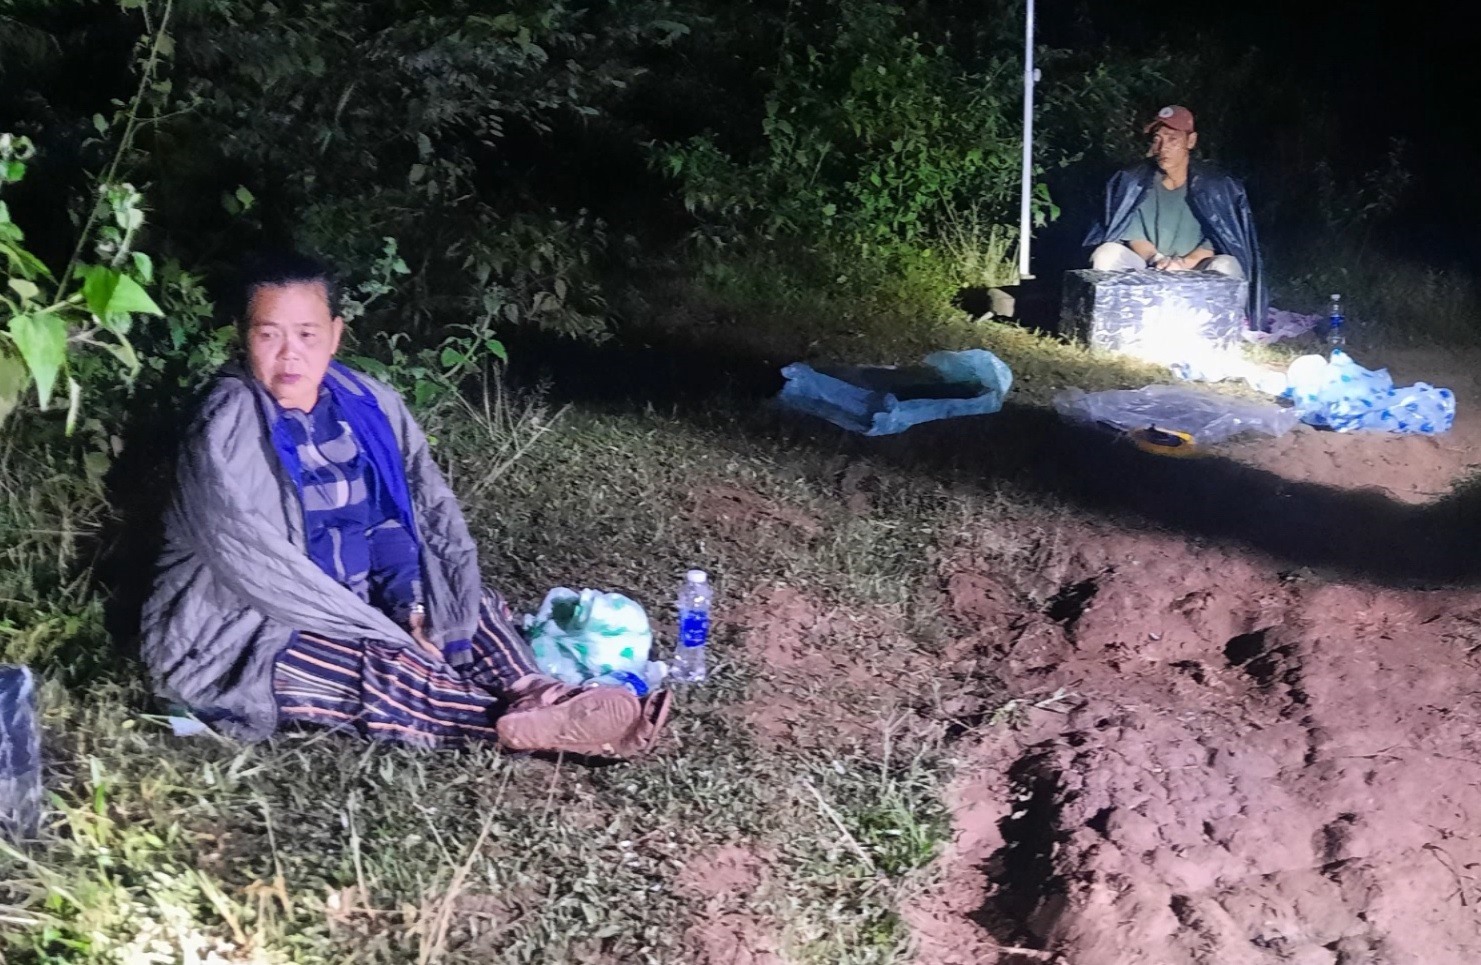 Bà Lê Thị Chinh và ông Hồ Tuấn bị bắt khi đang vận chuyển pháo lậu. Ảnh: Mạnh Hùng.